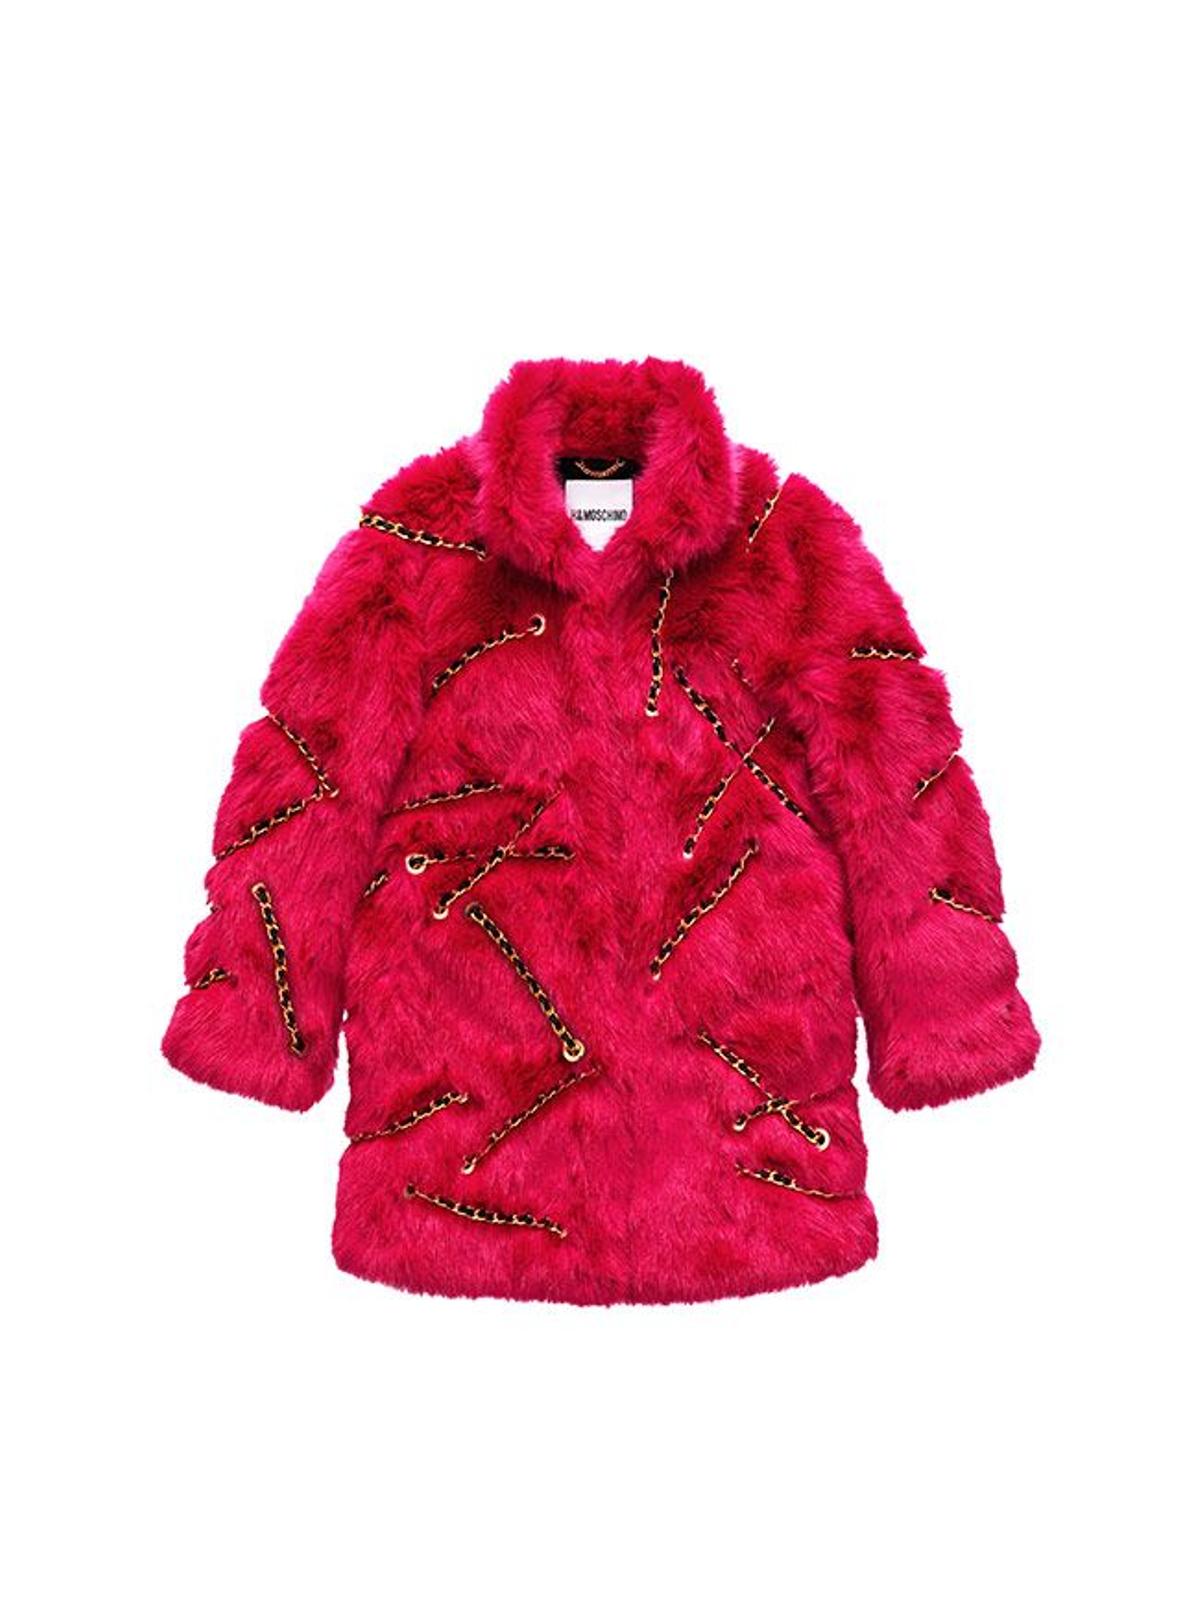 Todas las imágenes de la colección de Moschino x H&amp;M: abrigo fluffy rosa con cadenas